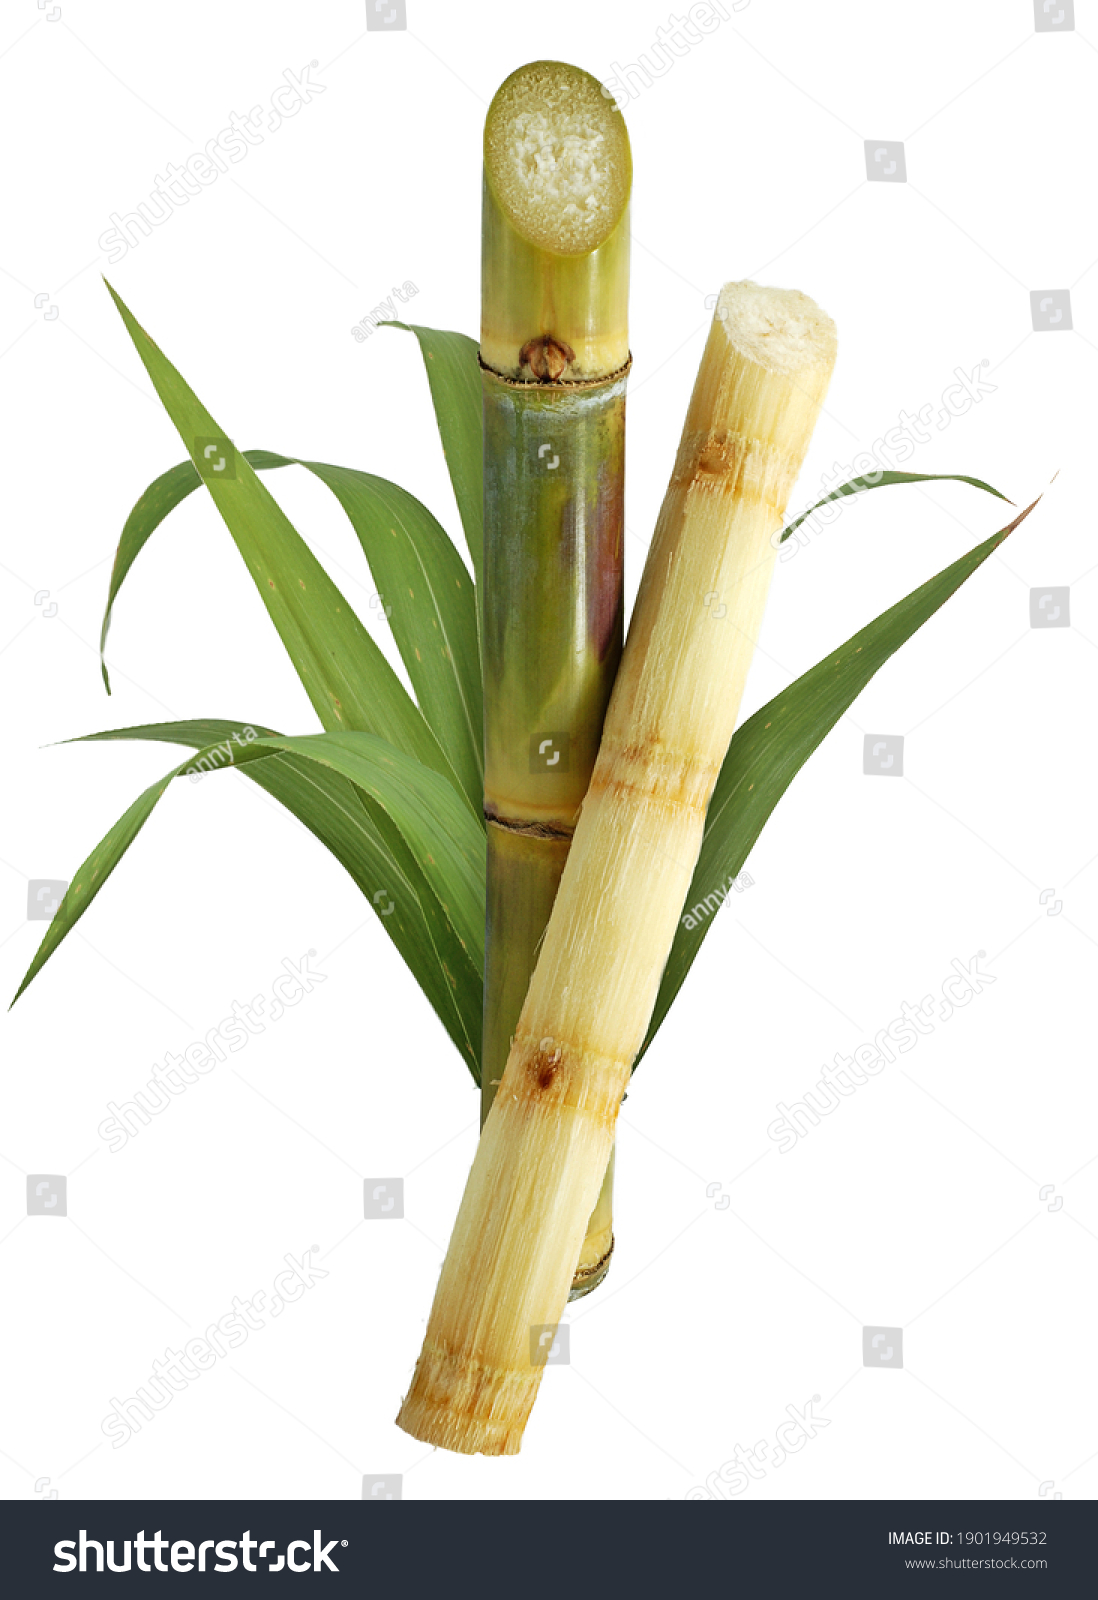 Sugar cane isolated on white background #1901949532